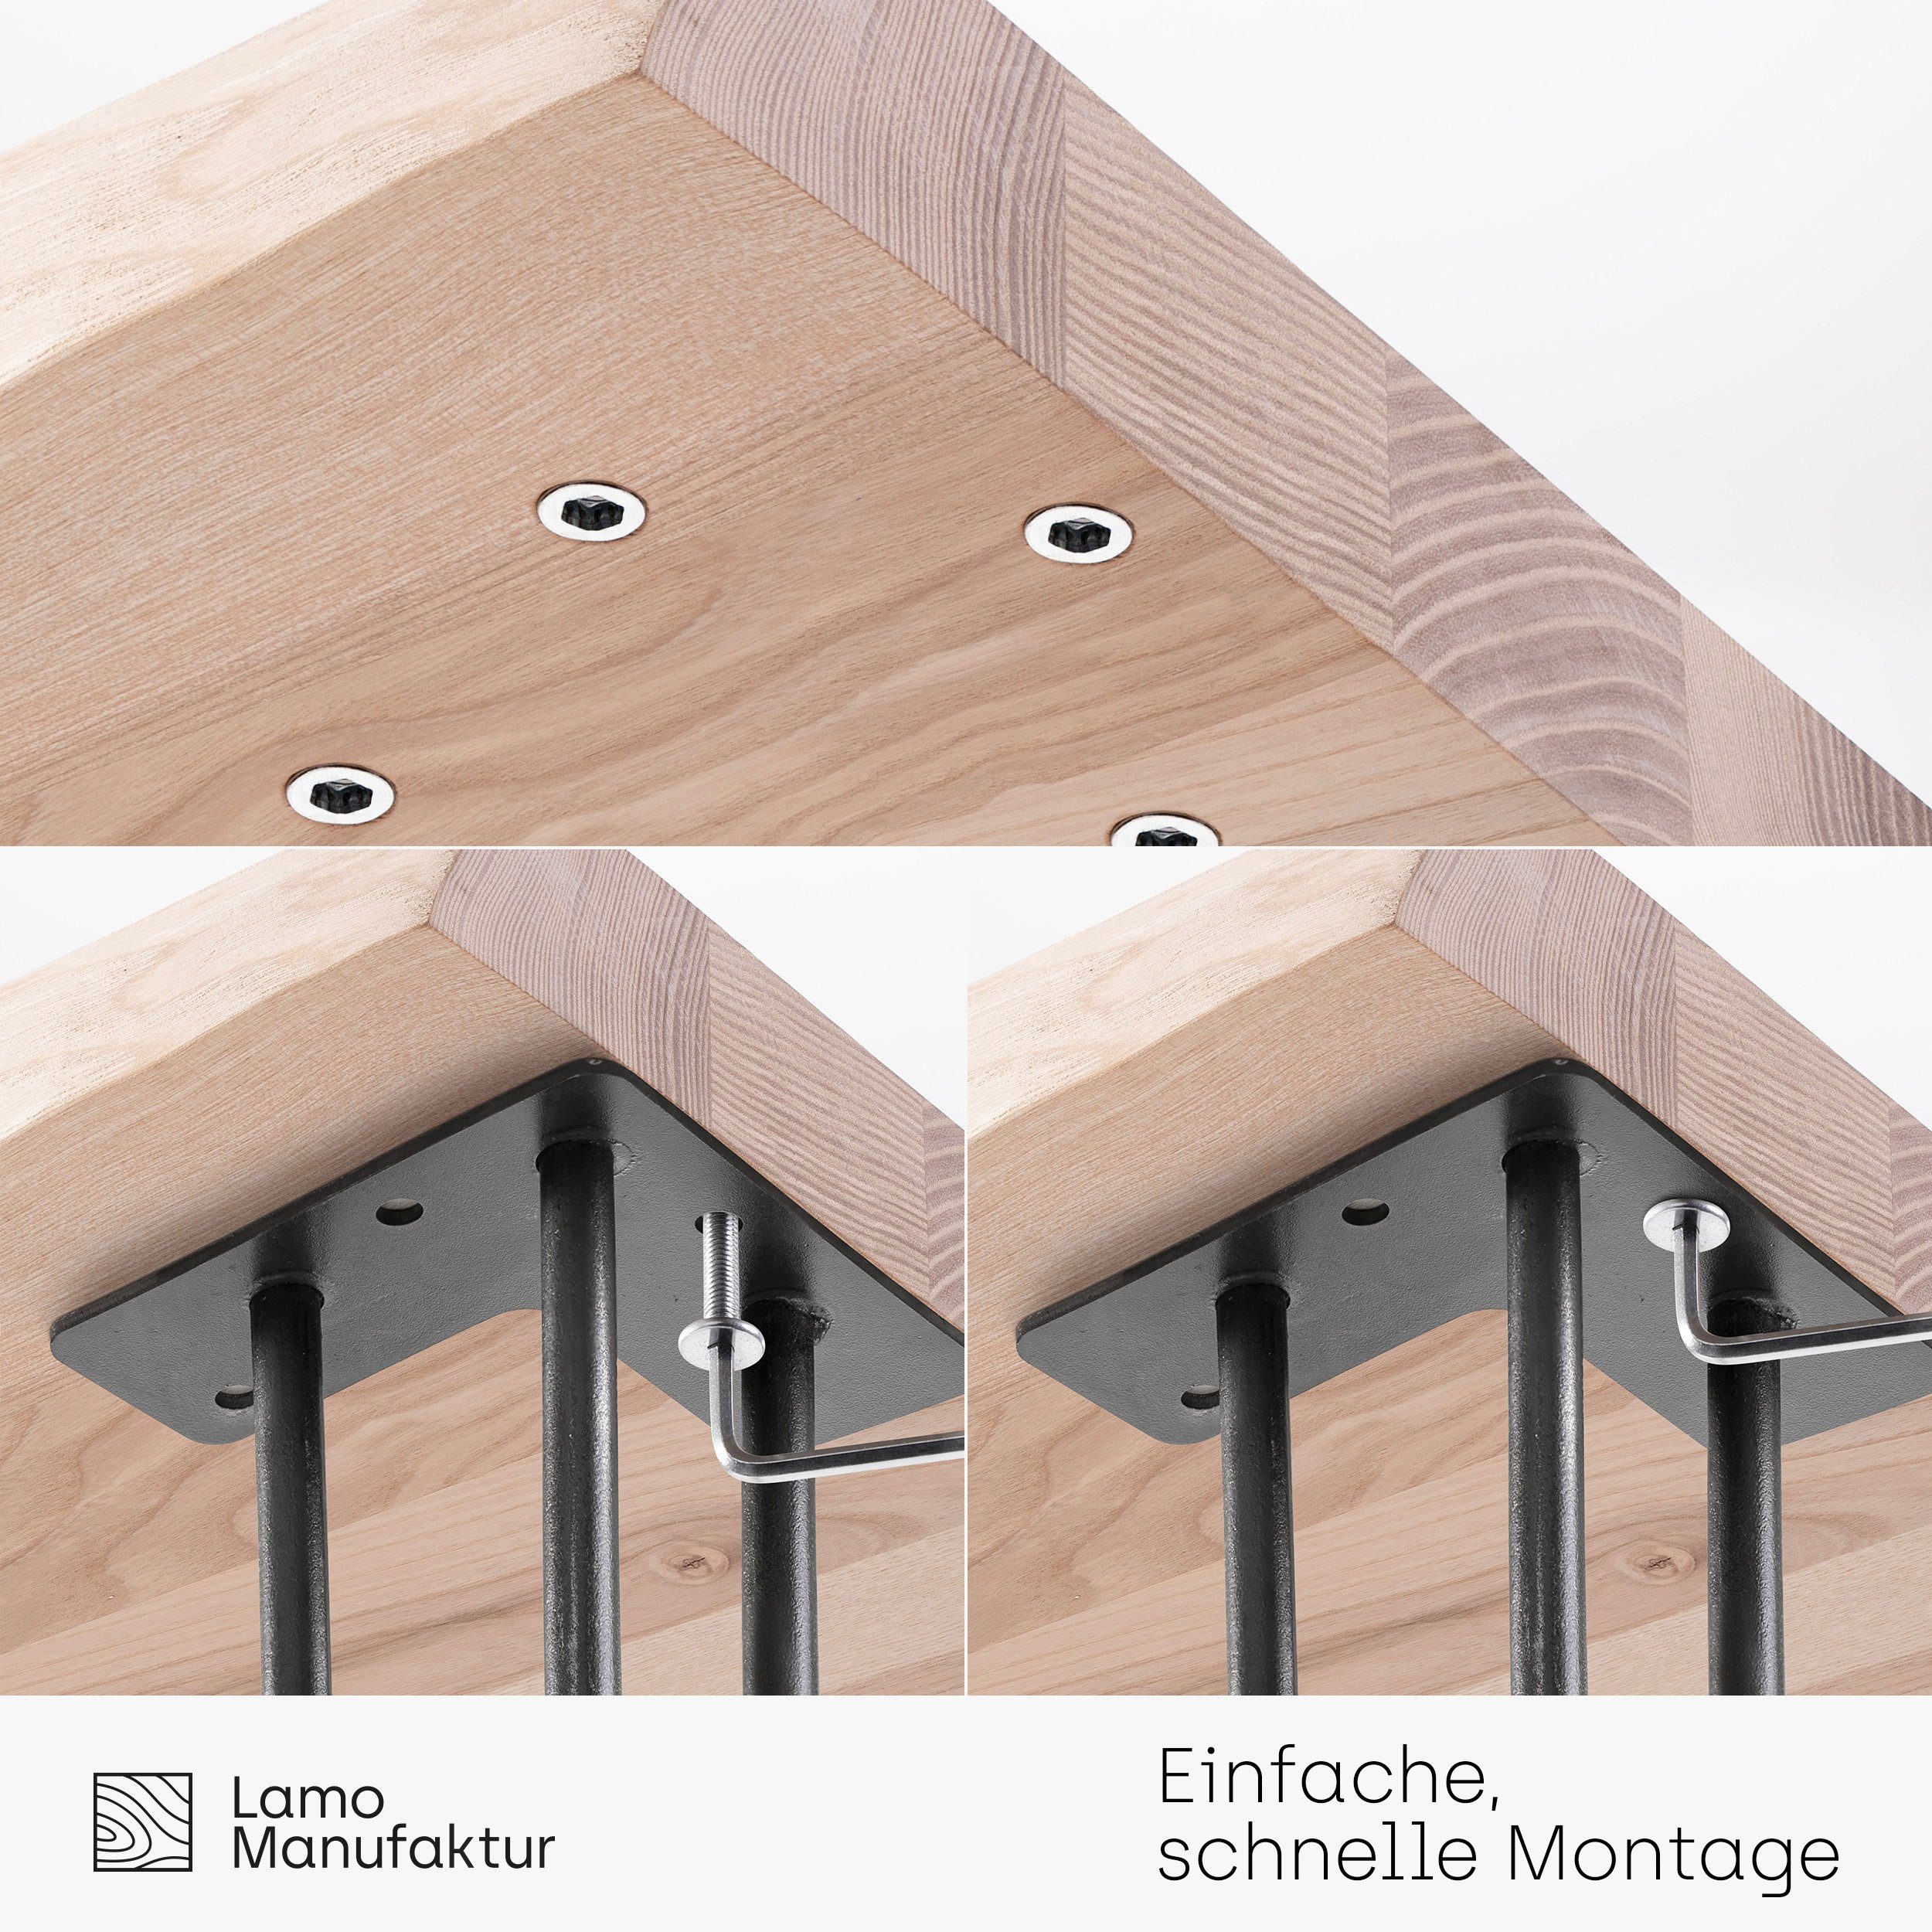 LAMO Manufaktur Baumkantentisch inkl. Metallgestell Weiß massiv Esstisch | Creative Massivholz (1 Baumkante Natur Tisch)